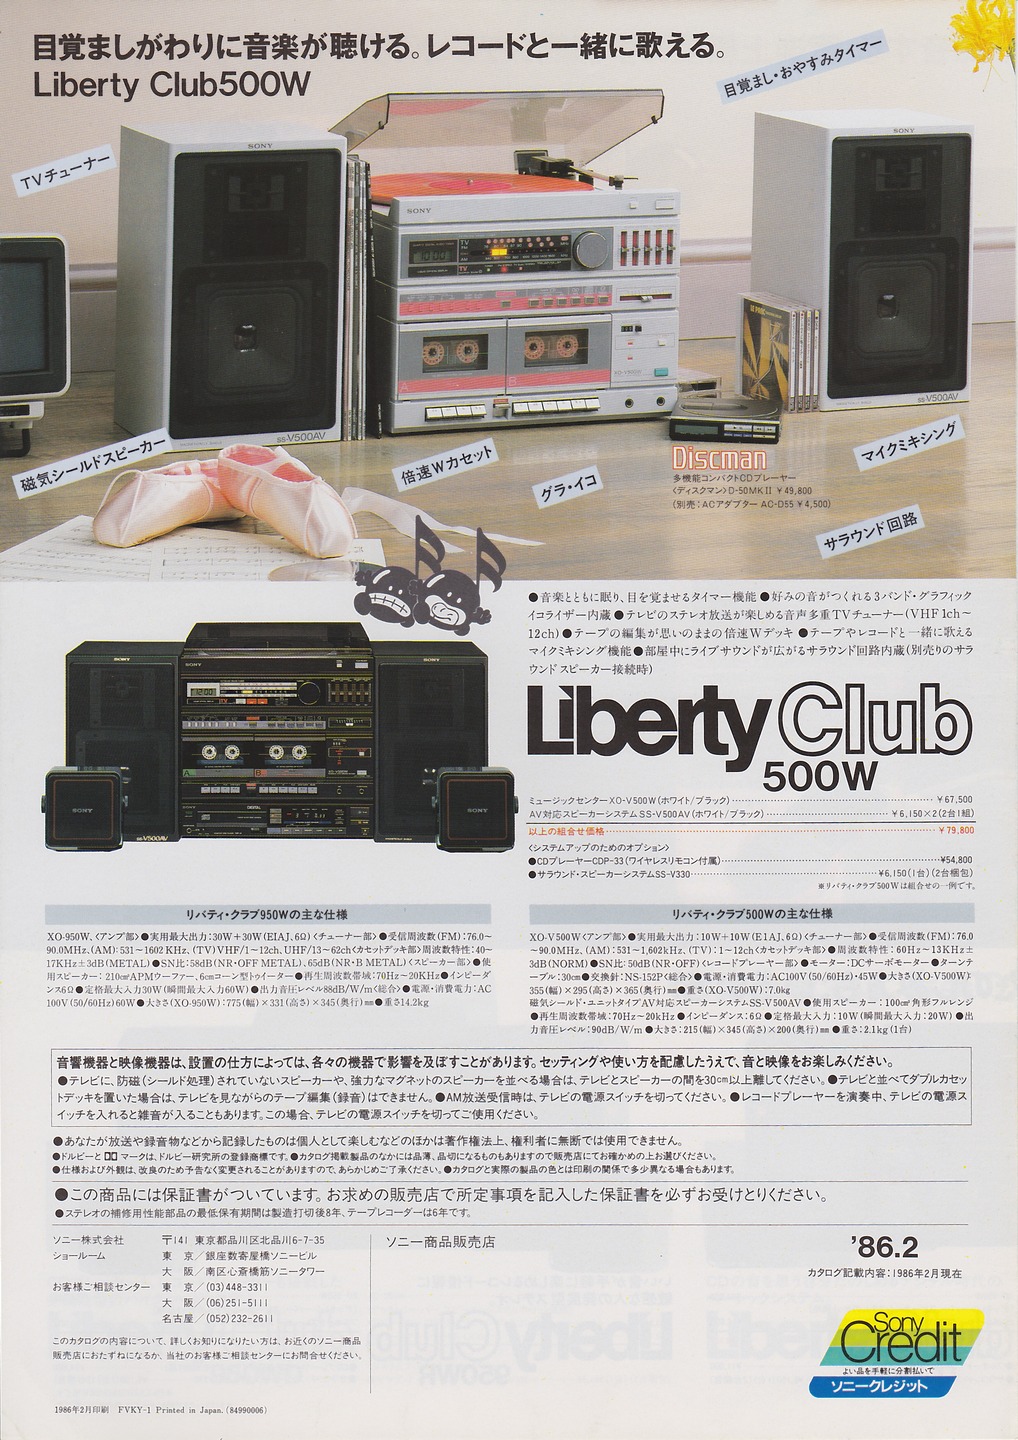 Liberty Club 1986年2月 | ソニー坊やと呼ばれた男